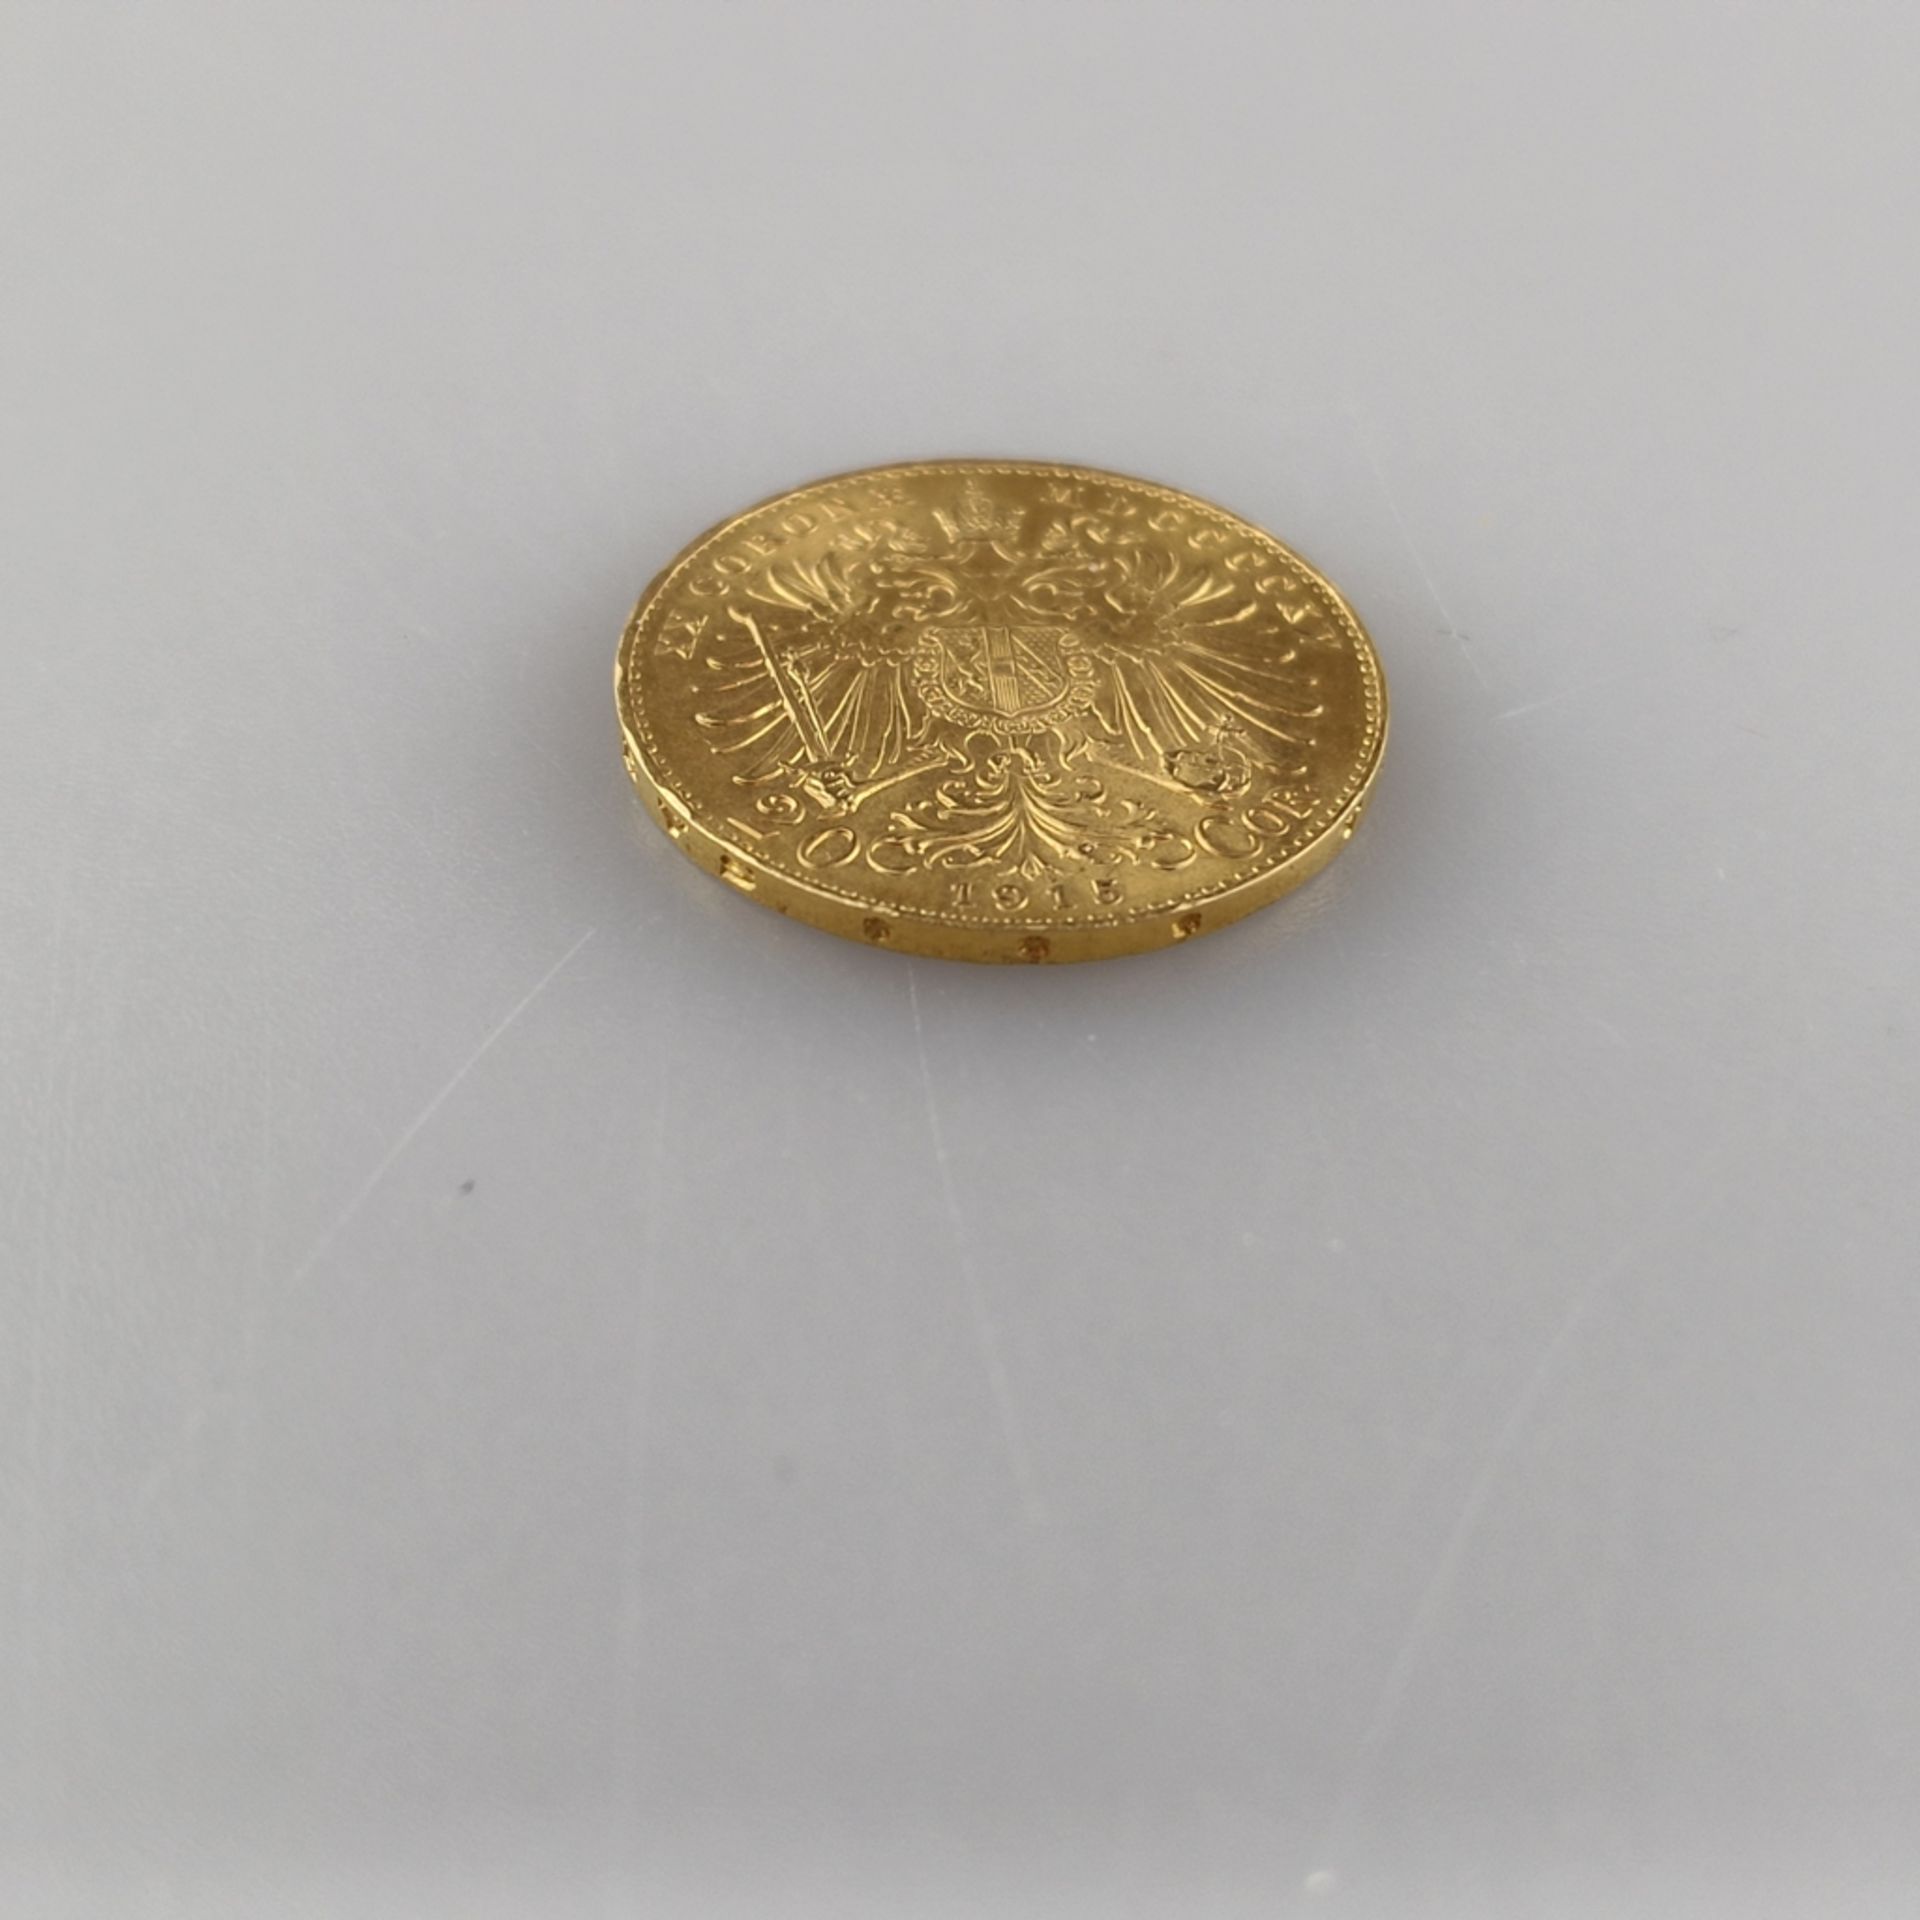 Goldmünze 20 Goldkronen 1915 - Österreich, Kaiser Franz Joseph I, Revers: österreichischer Wappenad - Image 3 of 3